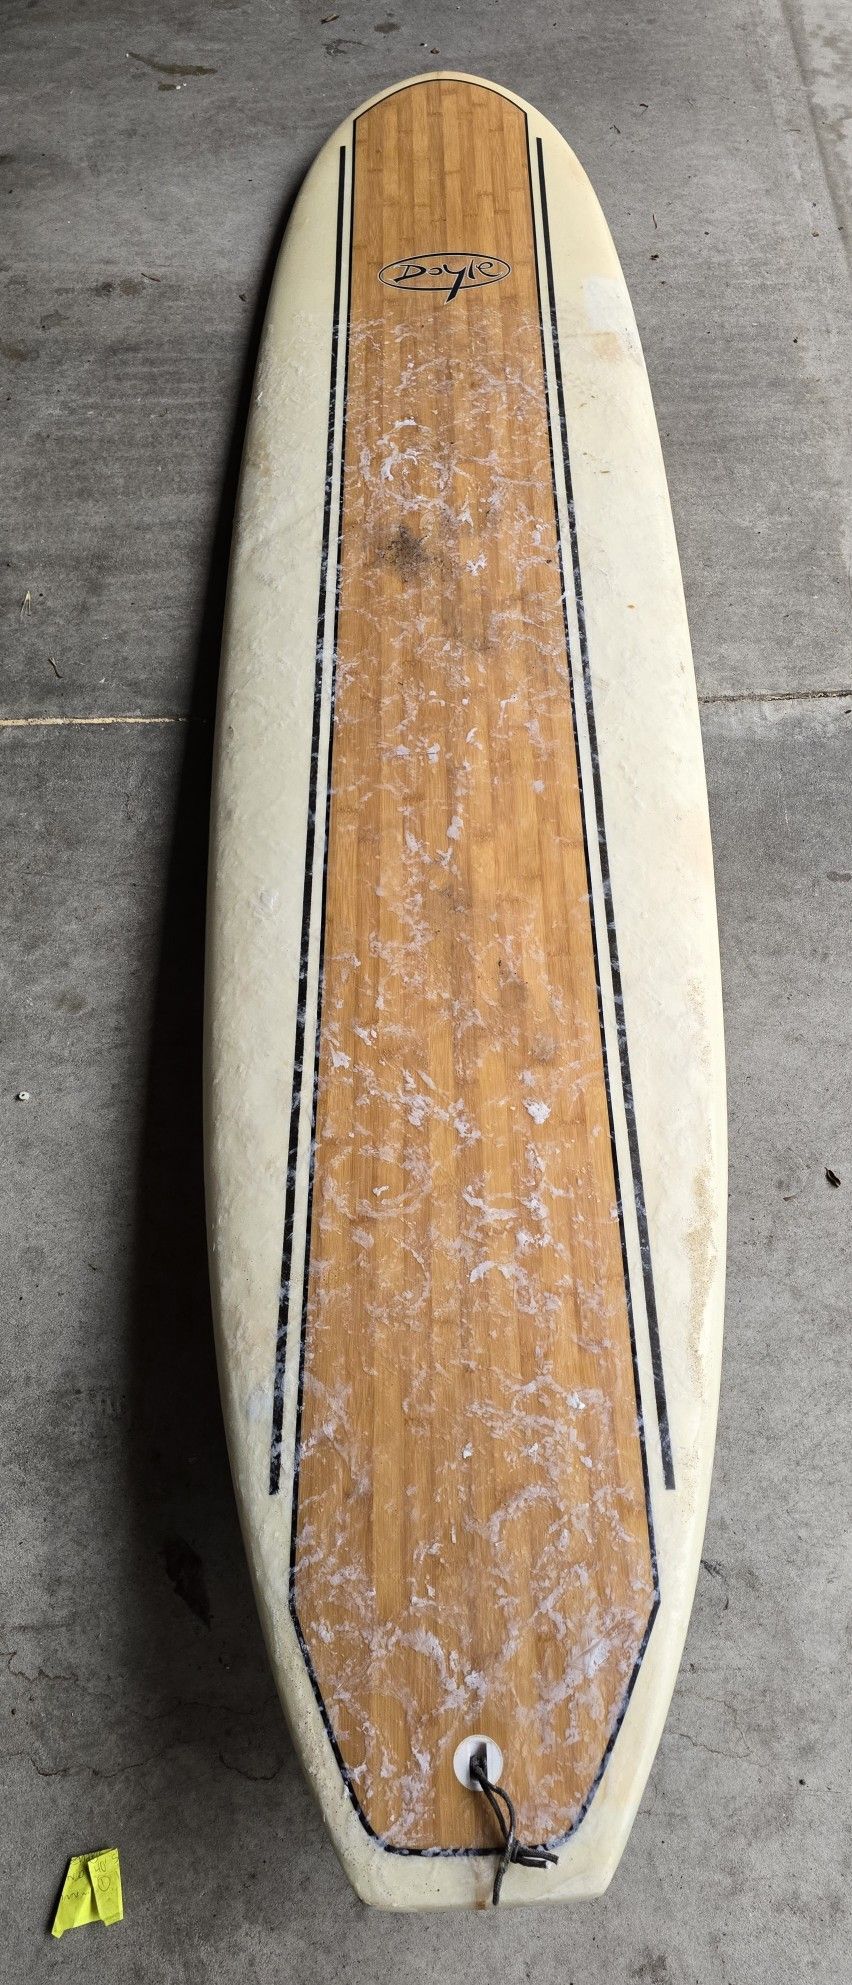 Surfboard 8ft Doyle $400